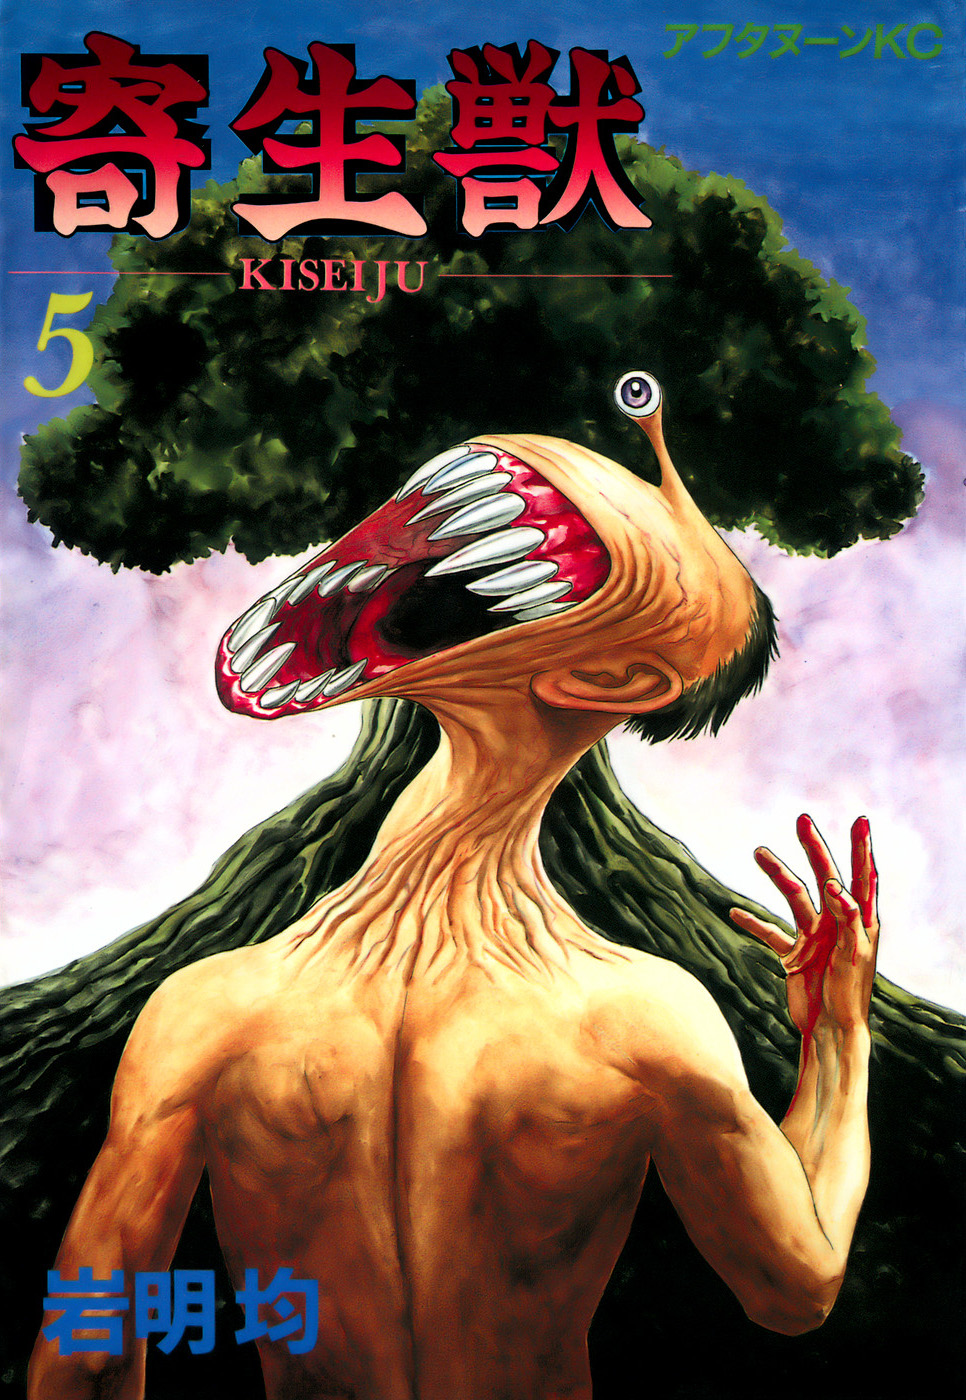 Anime Poster print Parasyte The Maxim Kiseijuu: Sei no Kakuritsu